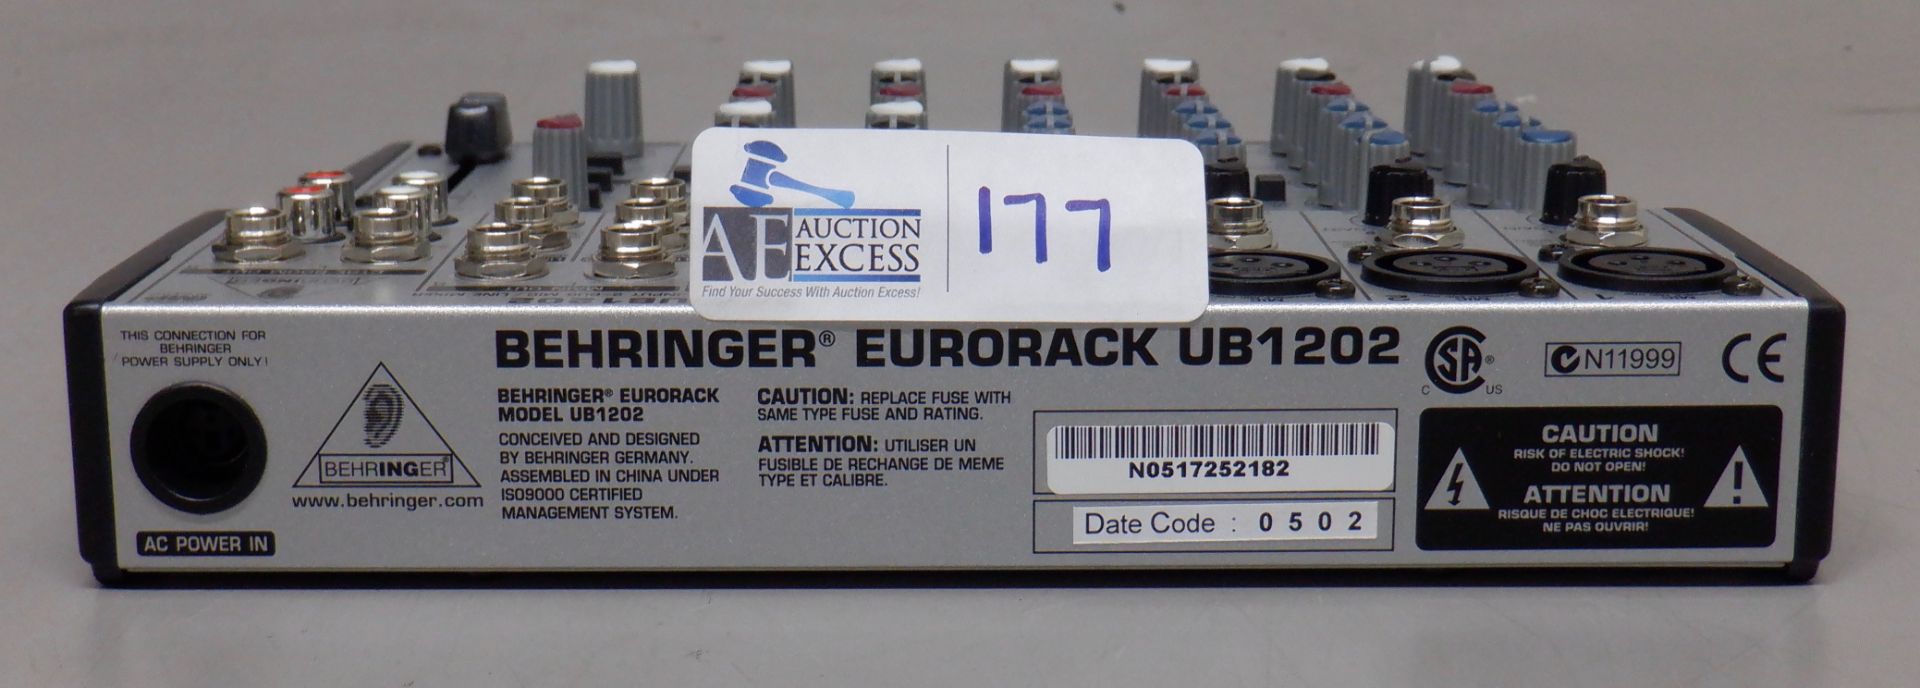 BEHRINGER EURORACK UB 1202 IN ORIGINAL BOX - Bild 4 aus 4